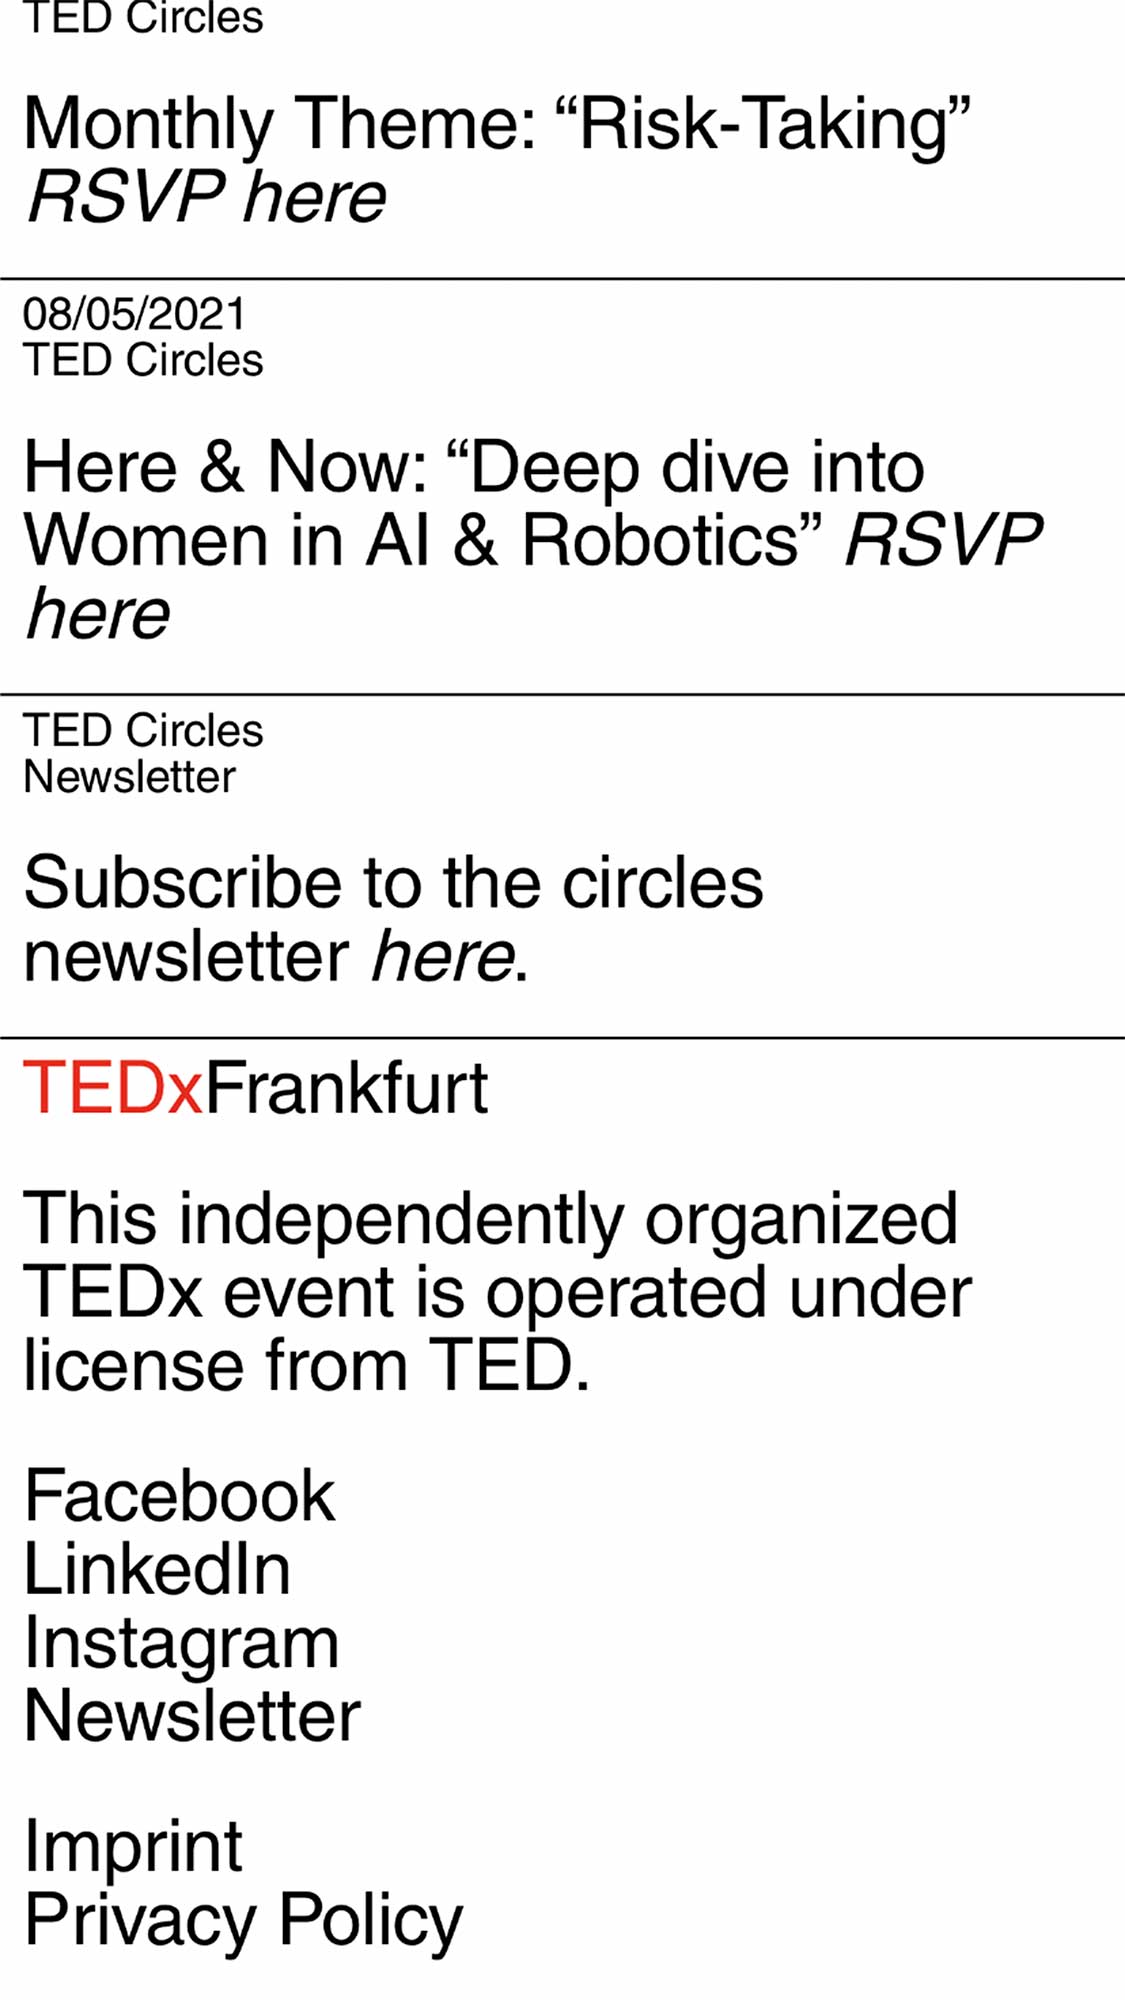 TEDX 6